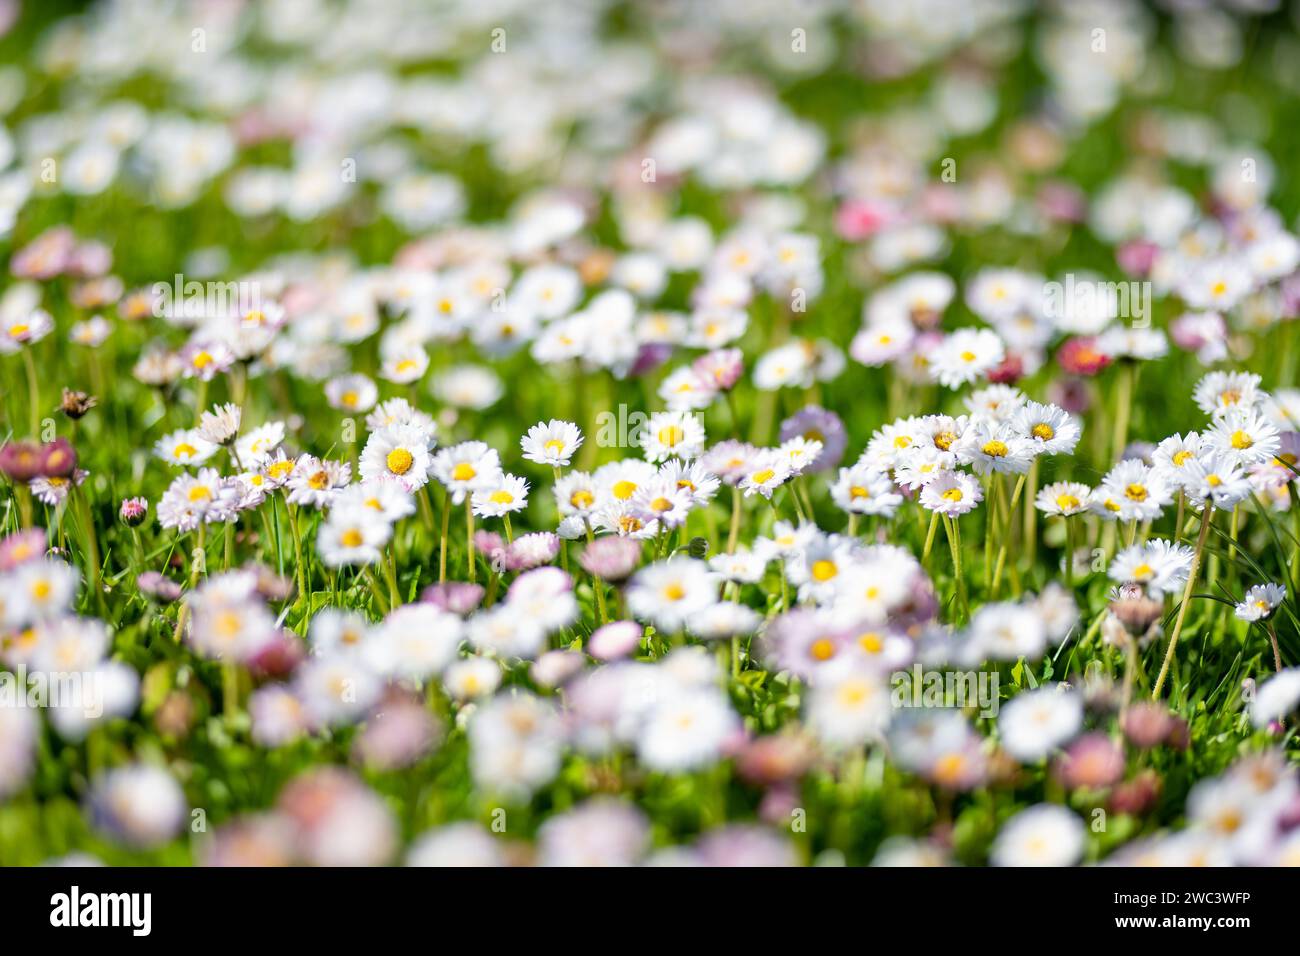 Bel prato in primavera pieno di margherite fiorite bianche e rosa su erba verde. Prato a margherita. Bellis perennis. Foto Stock